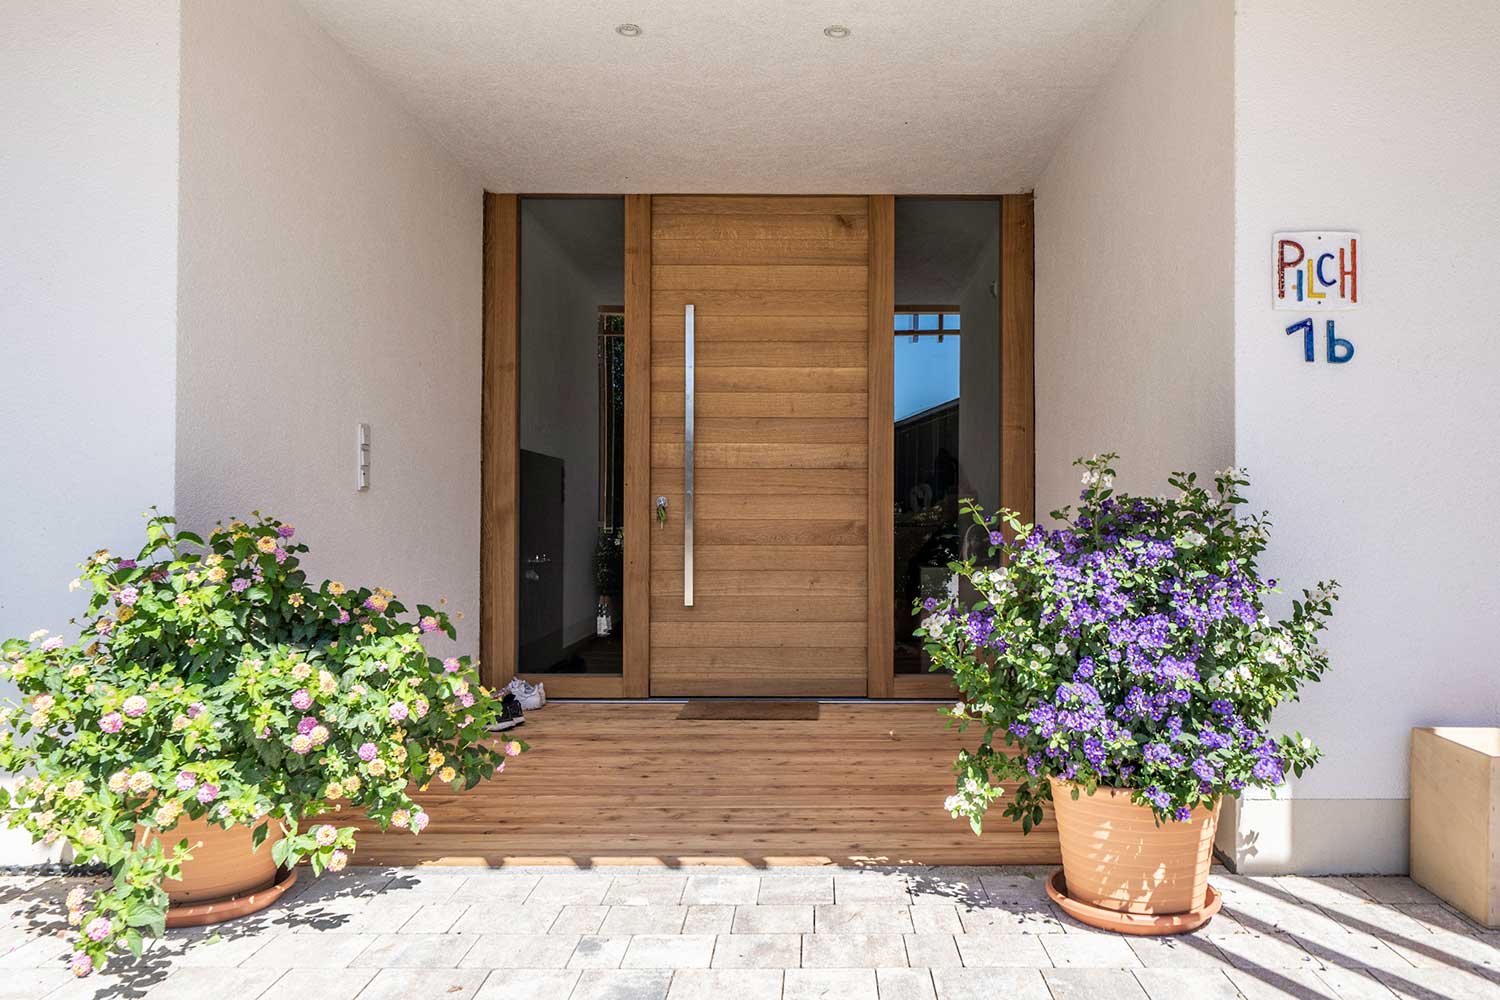 Eingangsbereich mit Holztüre und Blumenstöcke